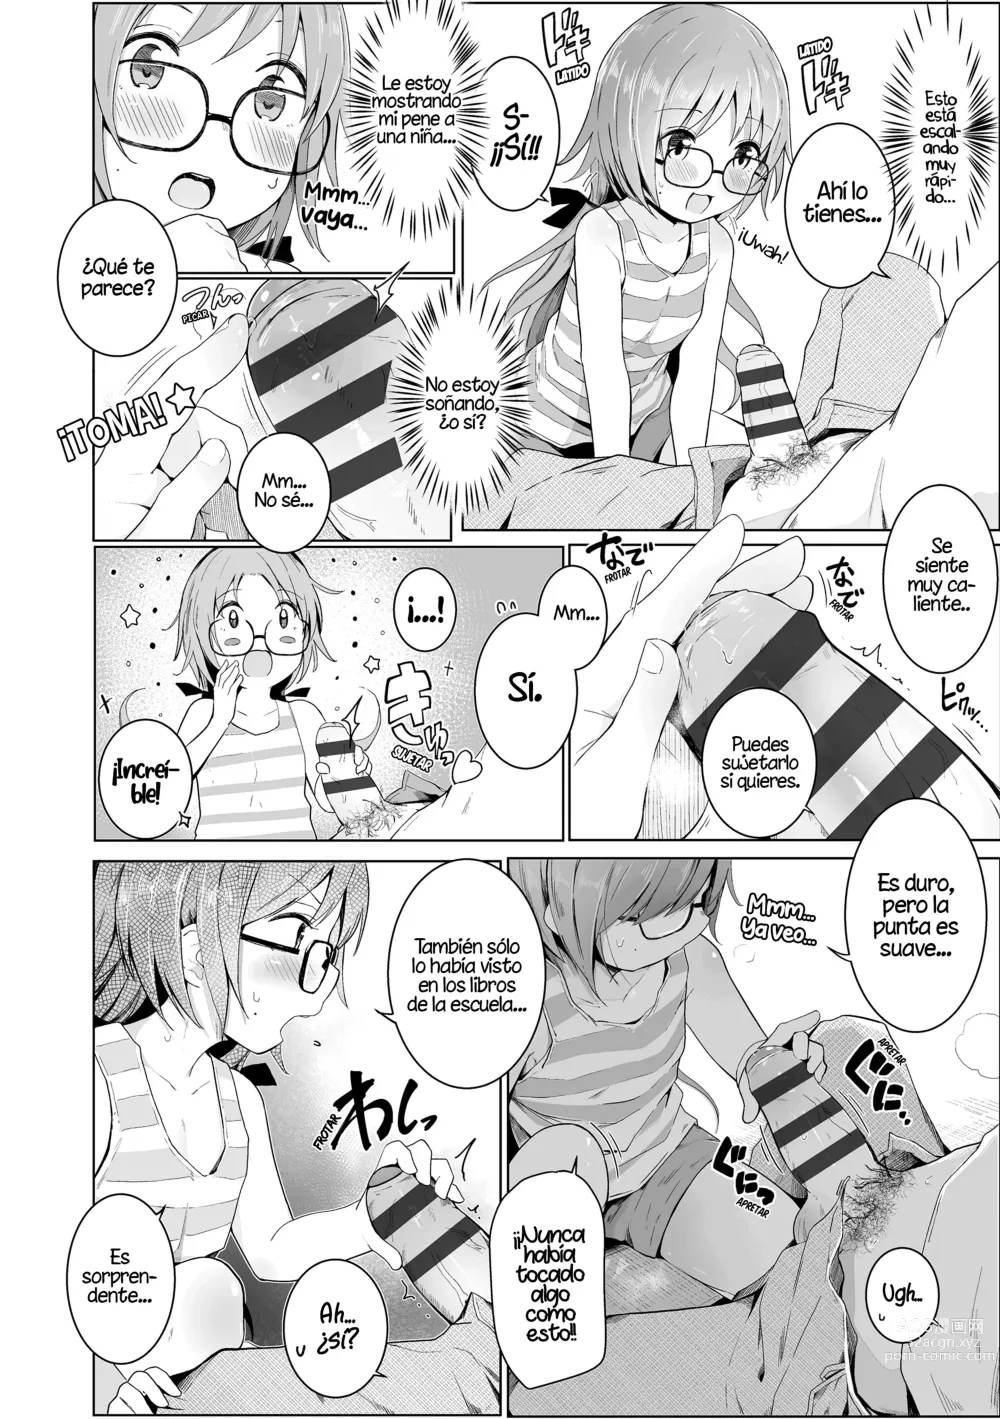 Page 6 of manga ¡Por favor, Sensei!